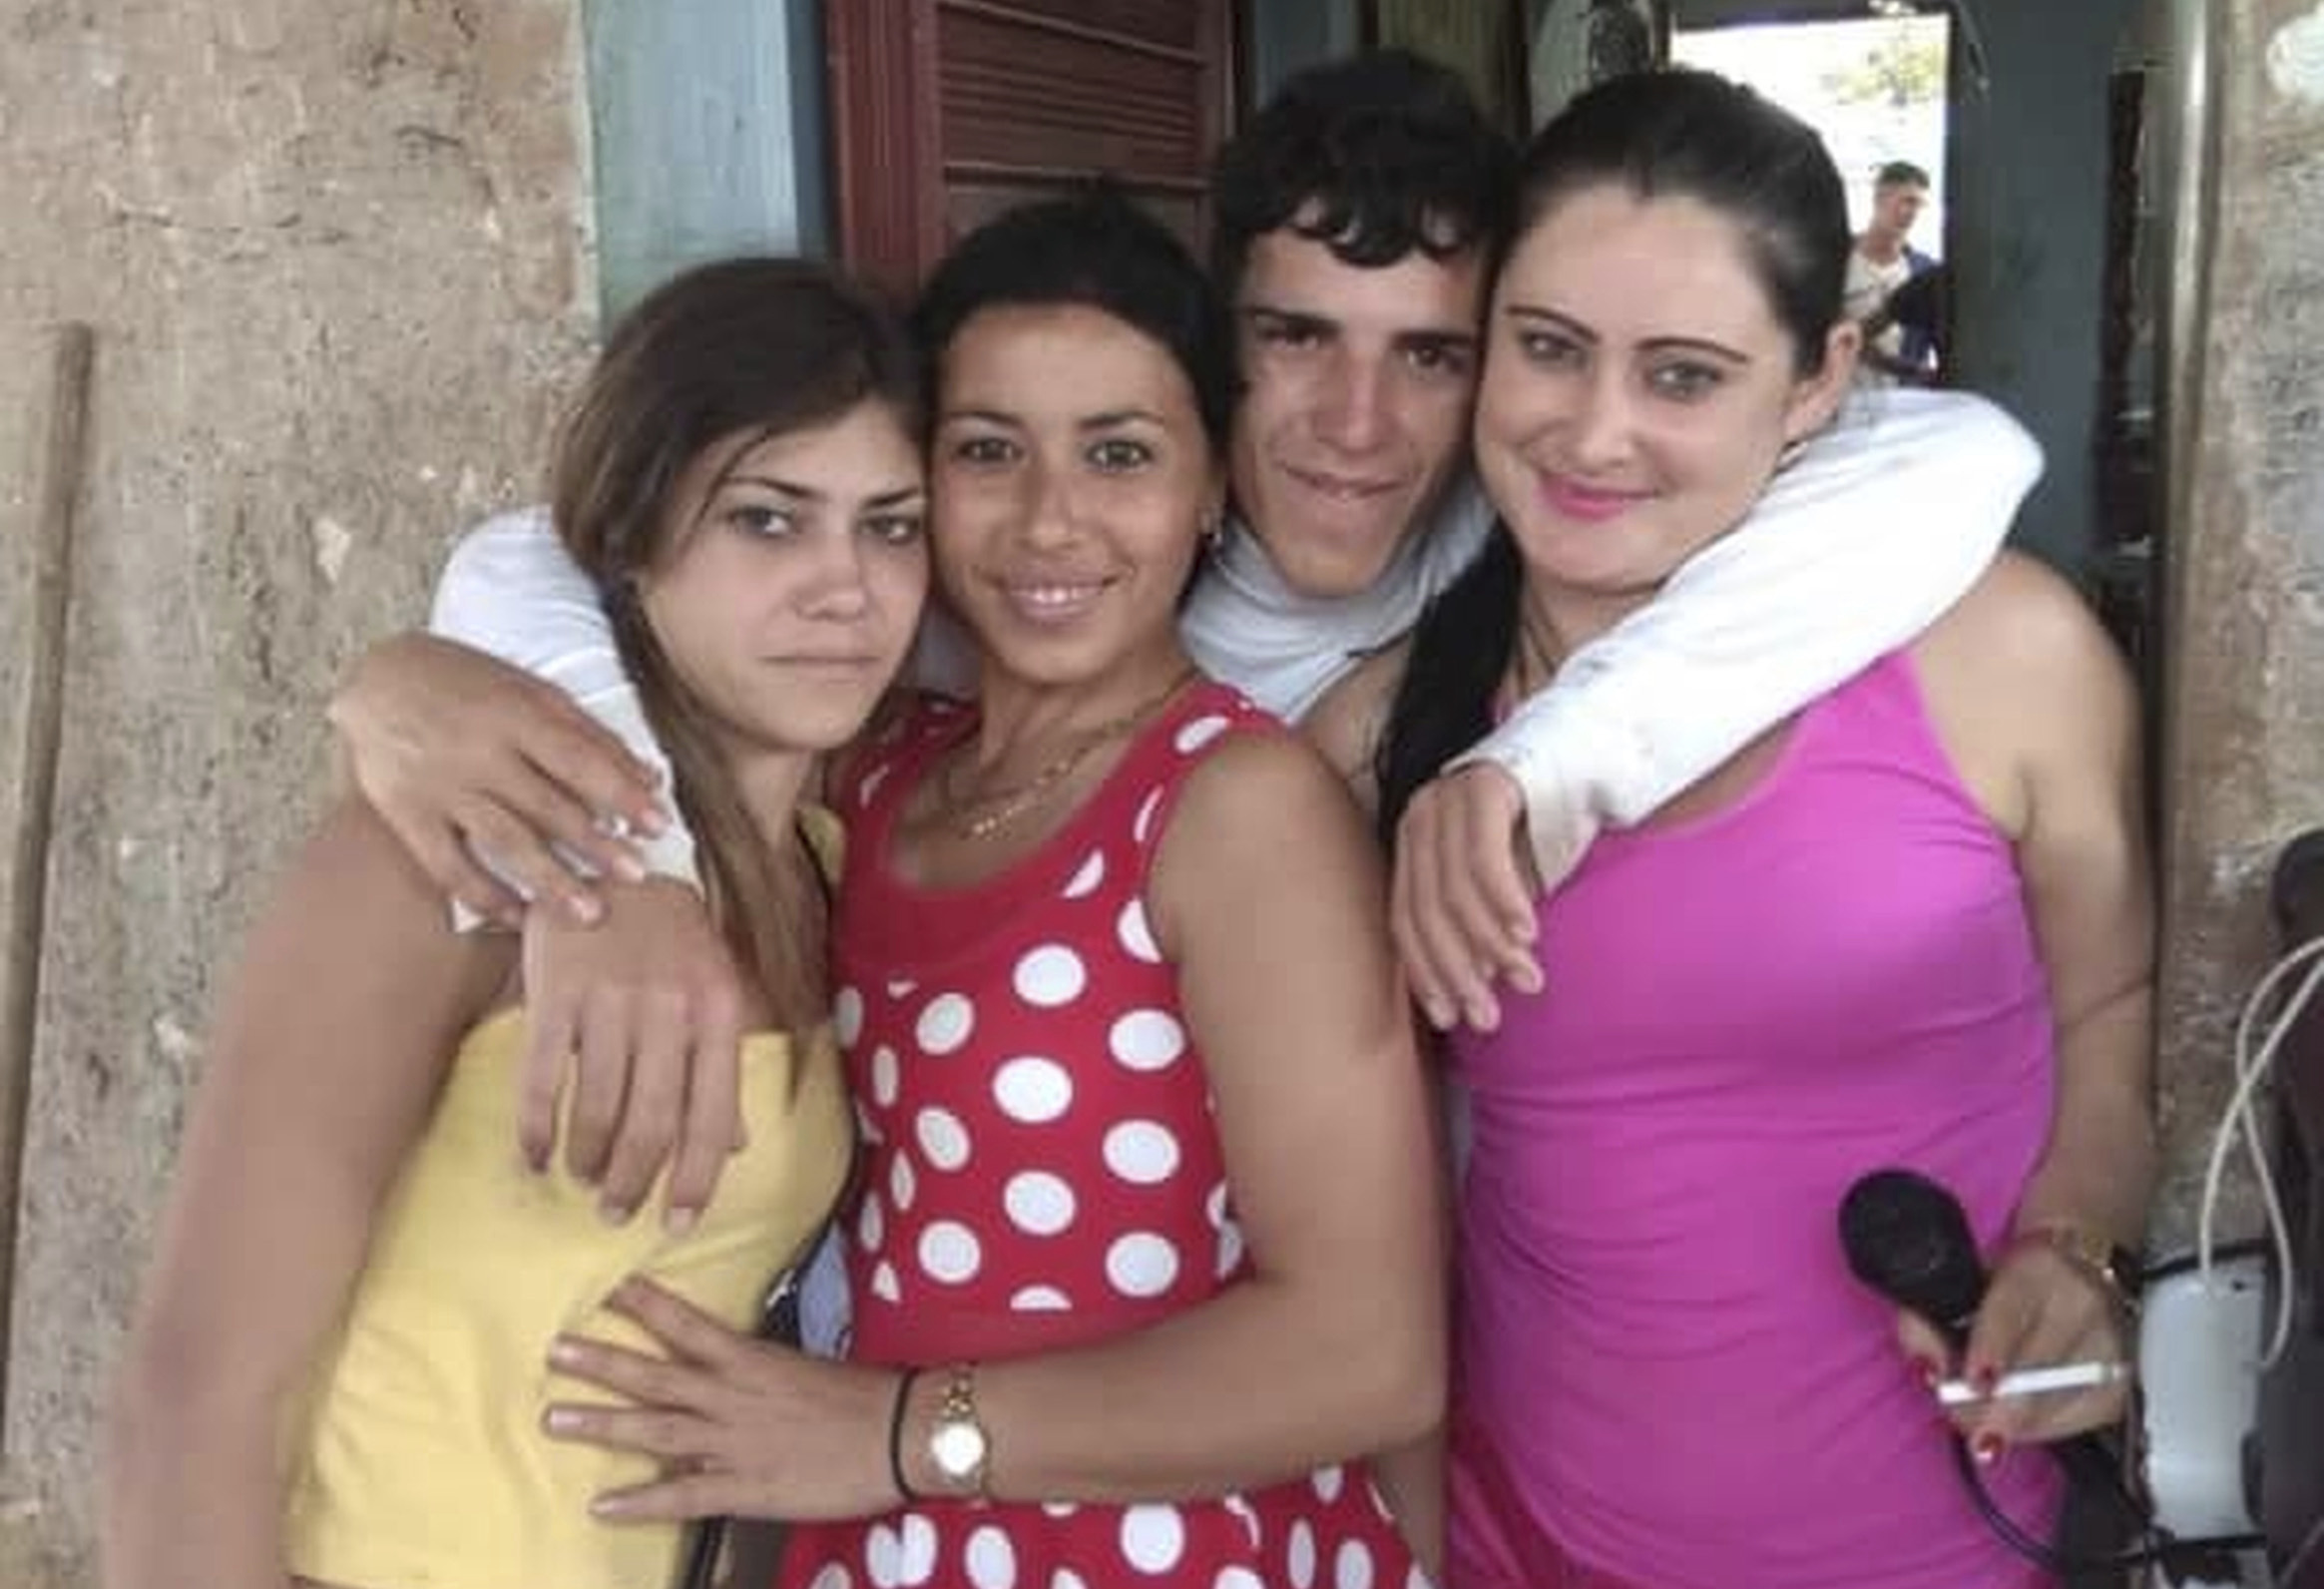 Naufragio en Cuba con cinco muertos y 12 desaparecidos: «Todos buscaban mejor vida»